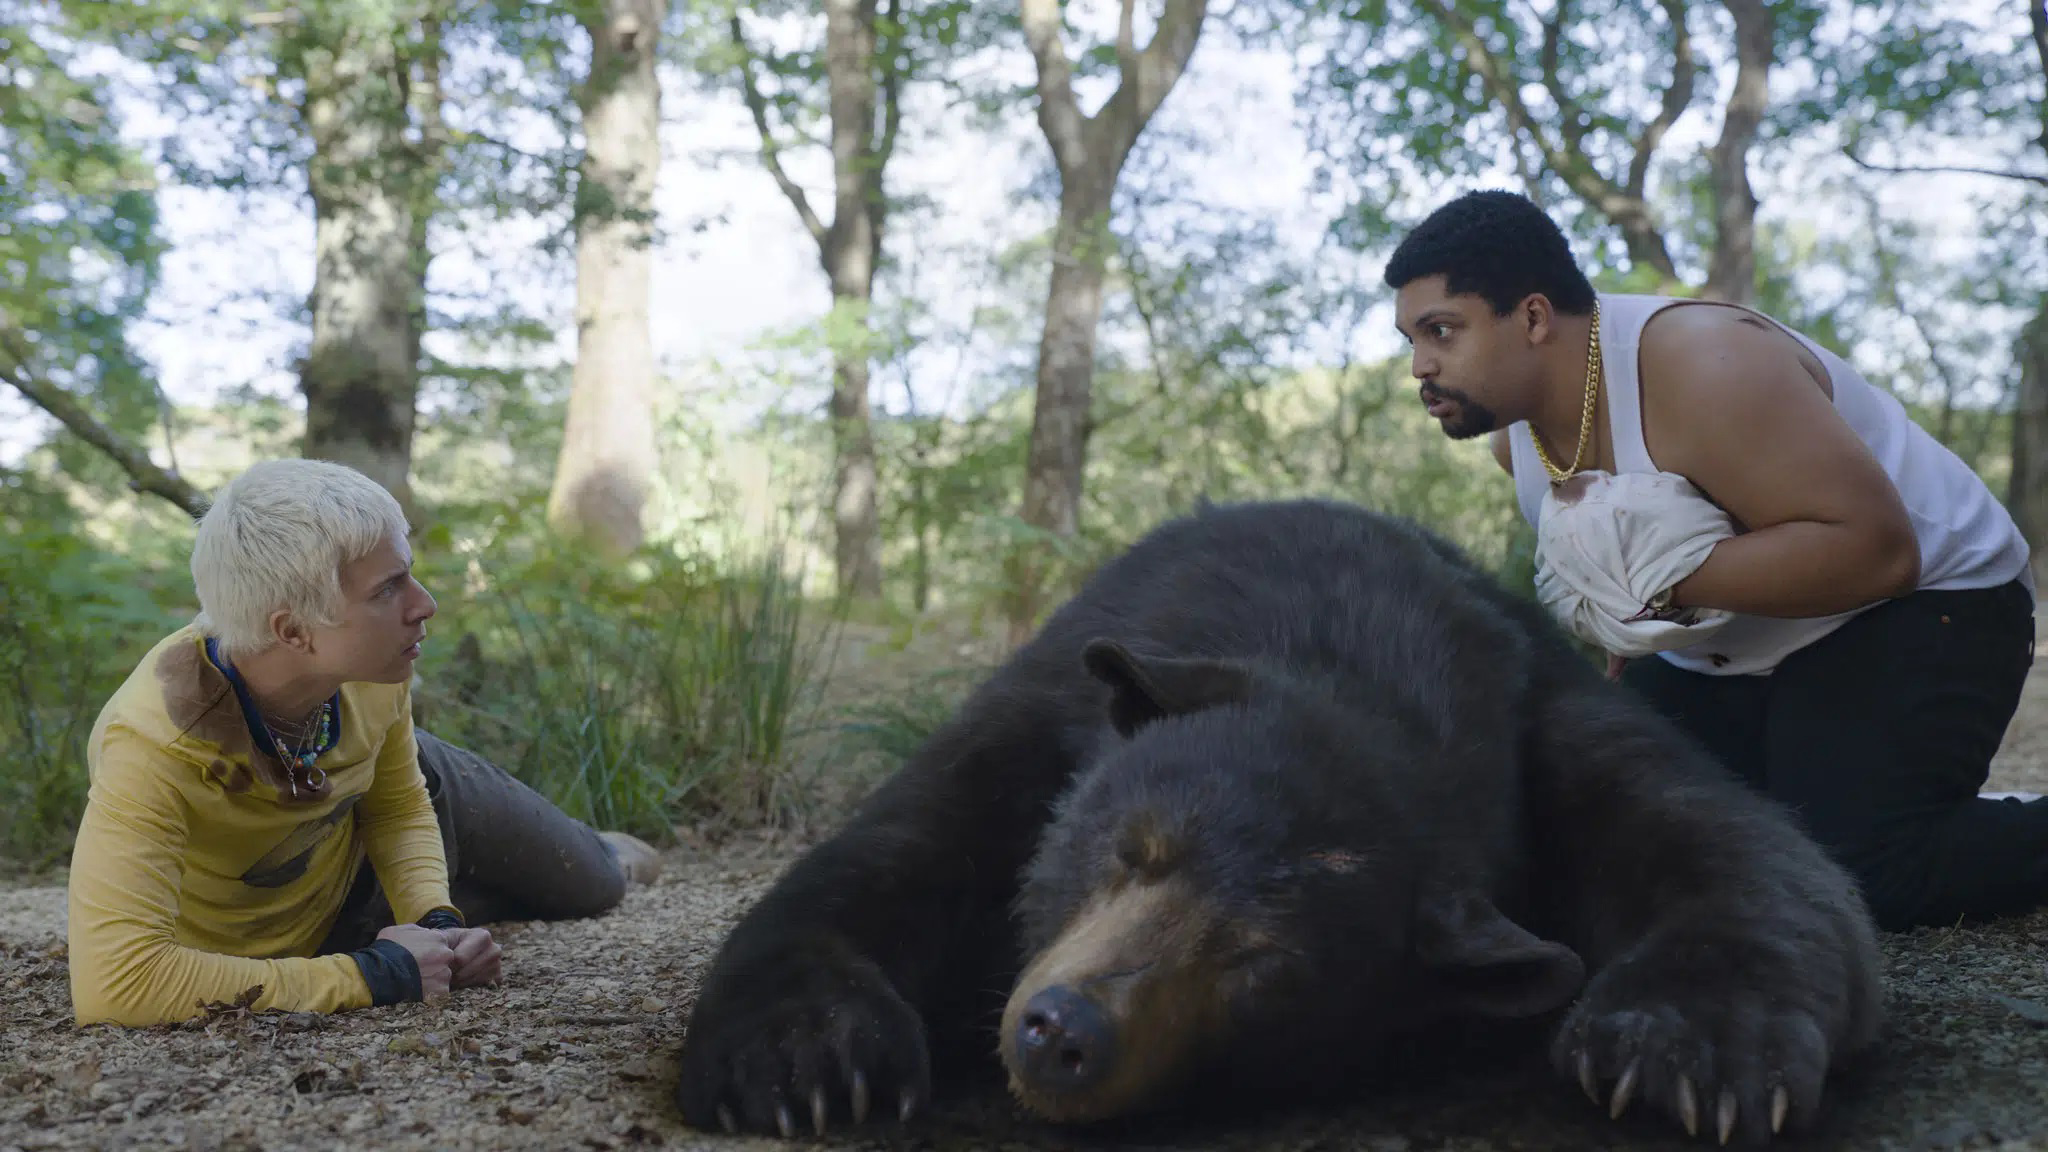 “Oso intoxicado” (Cocaine Bear), la experiencia más salvaje y bizarra que se esconde en el bosque